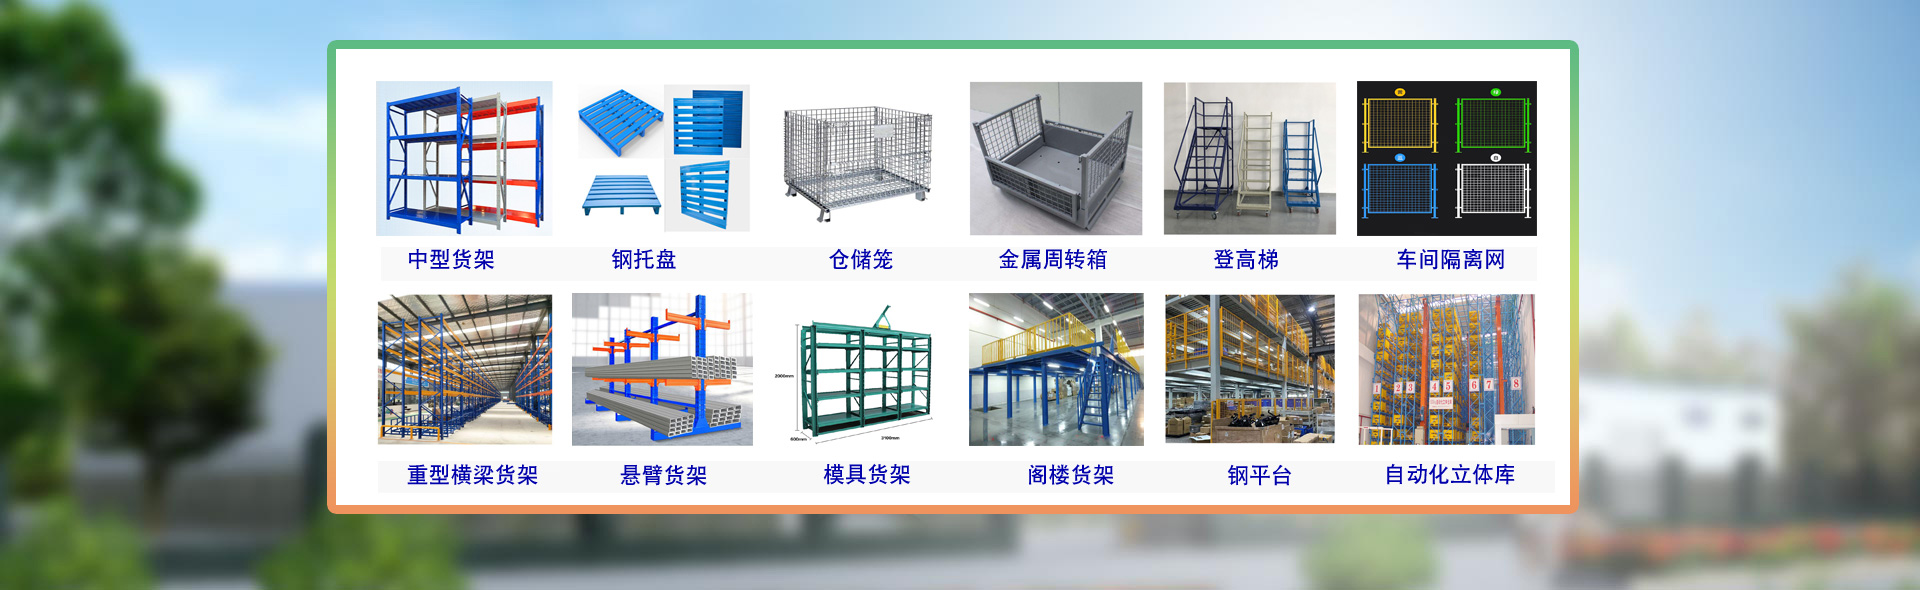 慶雲魯譽倉庫設備有限公司主要制造銷售各類工業倉儲設備